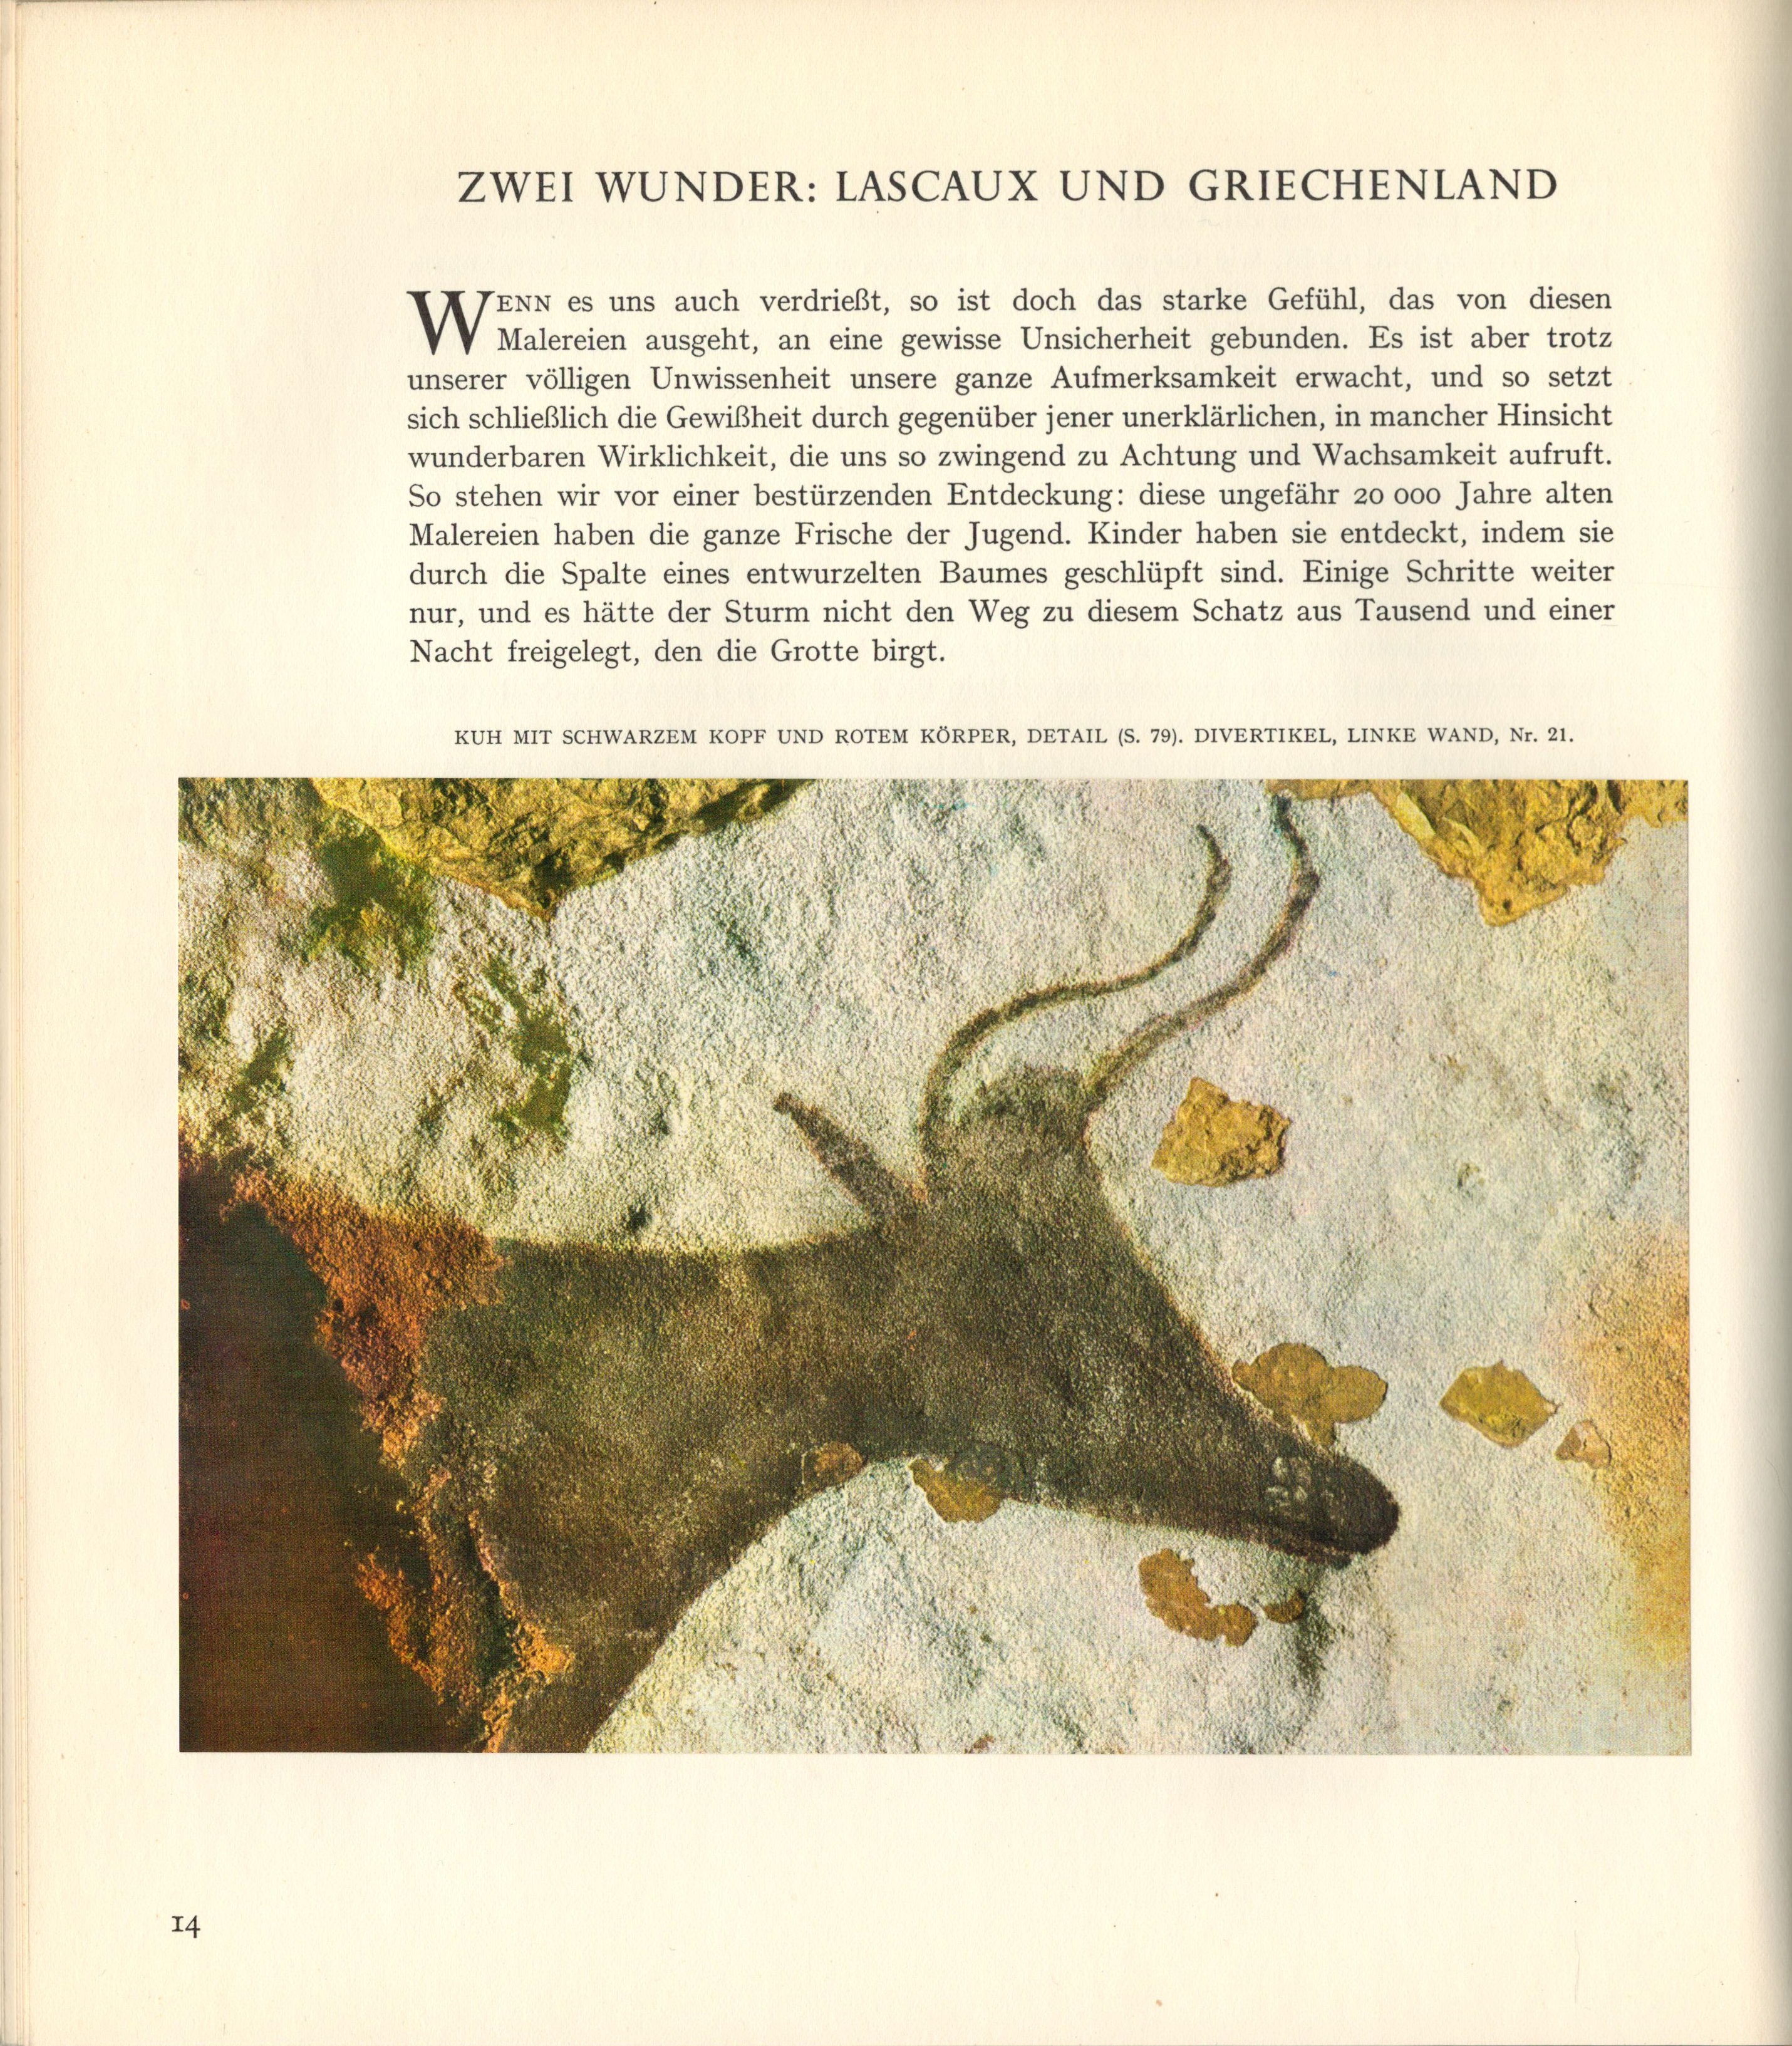 Die vorgeschichtliche Malerei: LASCAUX - Ausschnitt aus dem Buch